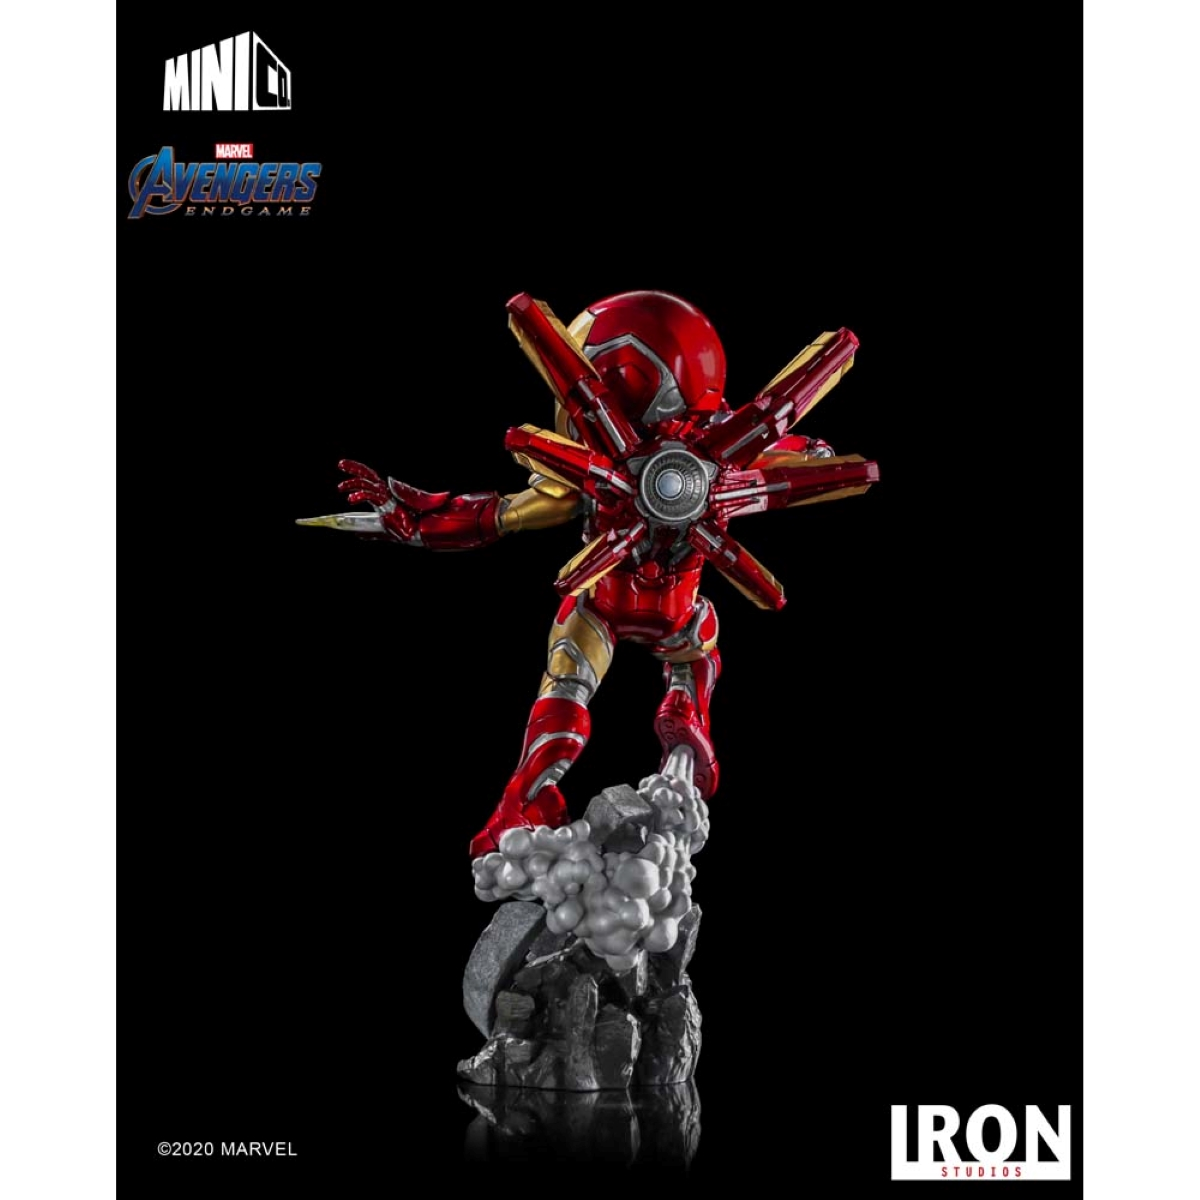 Endgame STUDIOS Figur Man IRON & Studios Iron figur Avengers: - Iron Minico